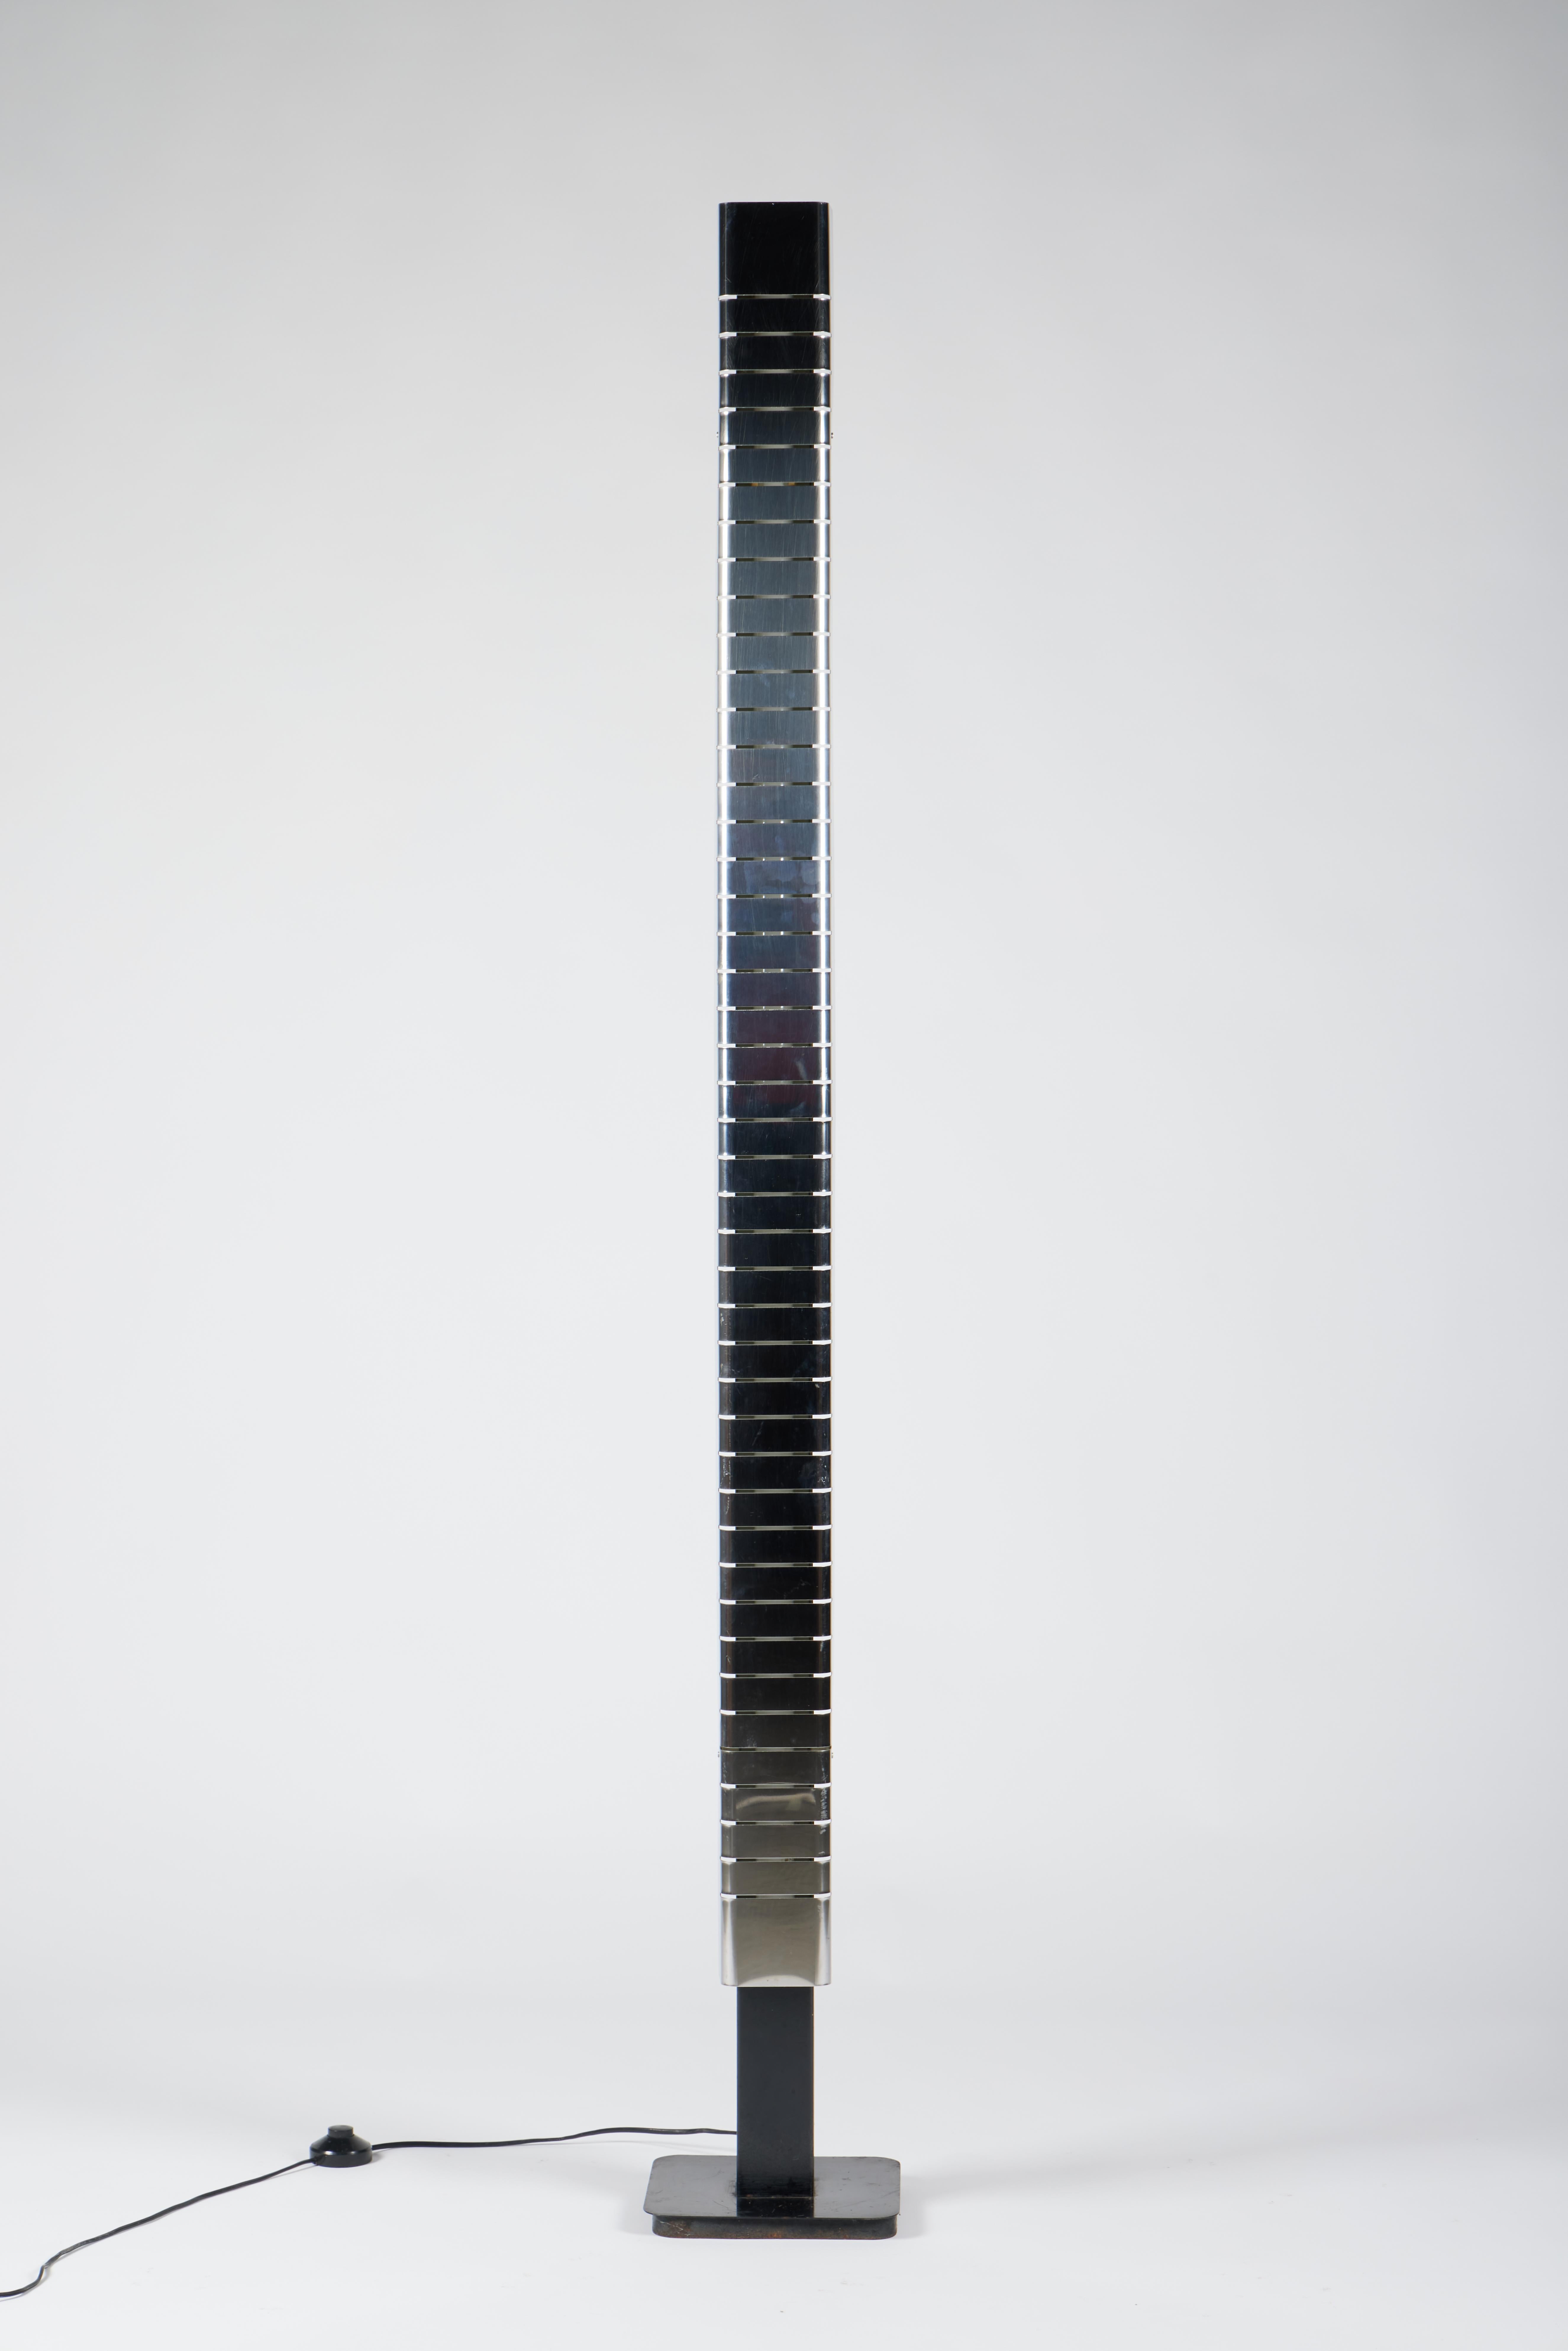 Lampadaire italien du milieu du siècle Lamperti, sculpté dans le chrome, années 1960.

La structure monolithique chromée de ce lampadaire est constituée d'une colonne continue en tôle, avec une série d'incisions à intervalles réguliers de haut en